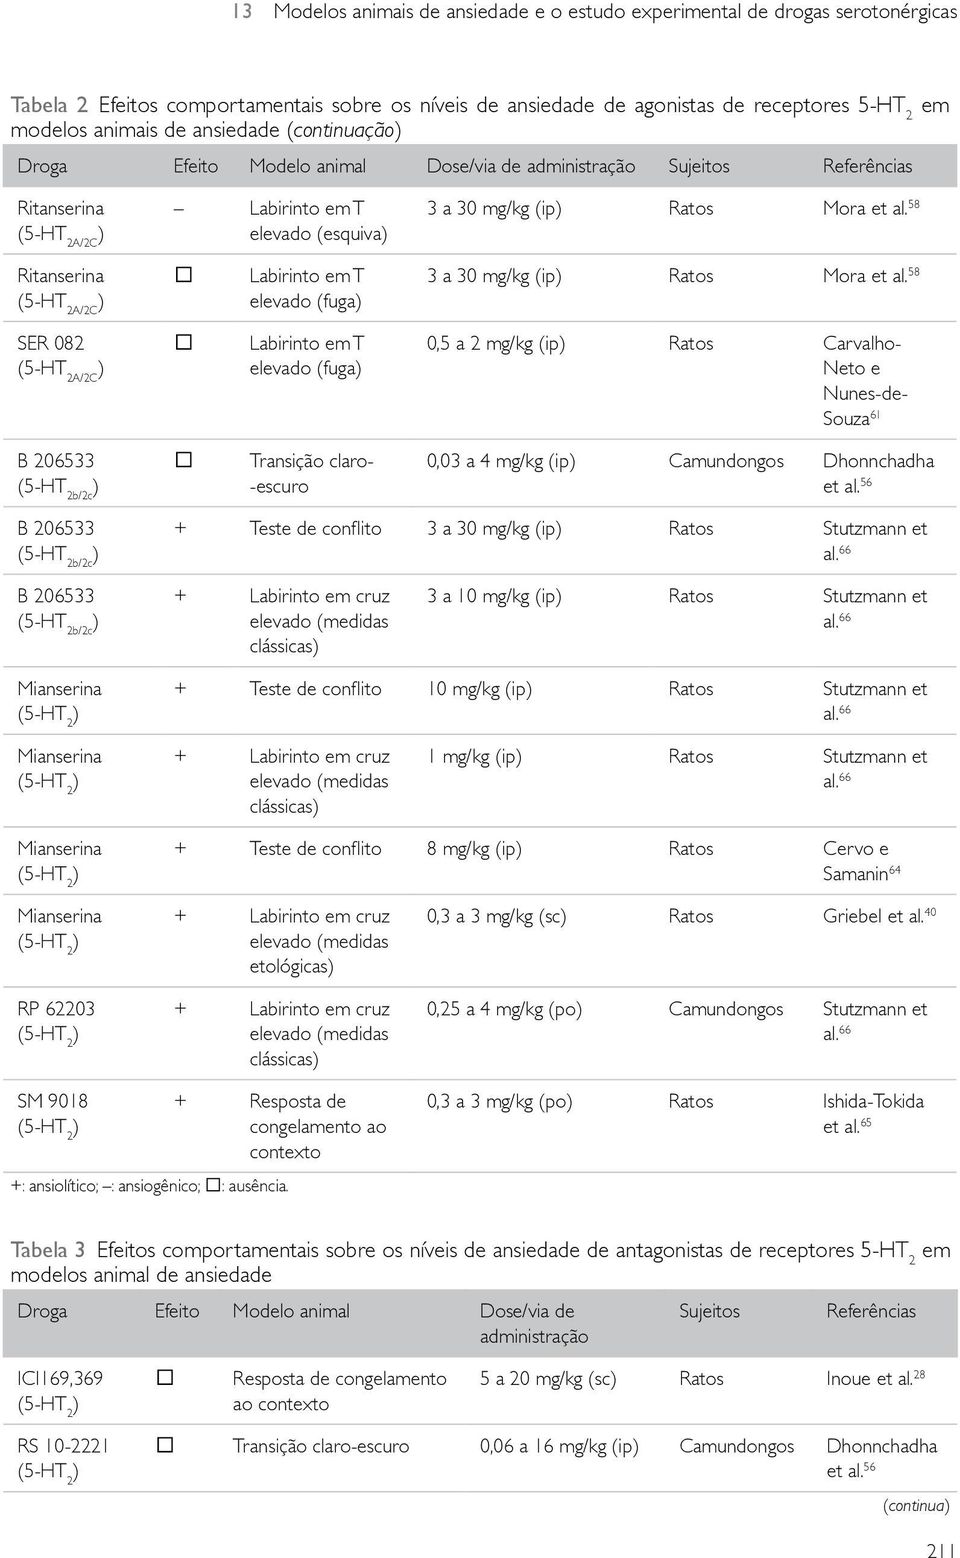 58 Ritanserina Labirinto em T elevado (fuga 3 a 30 mg/kg (ip Ratos Mora et al.